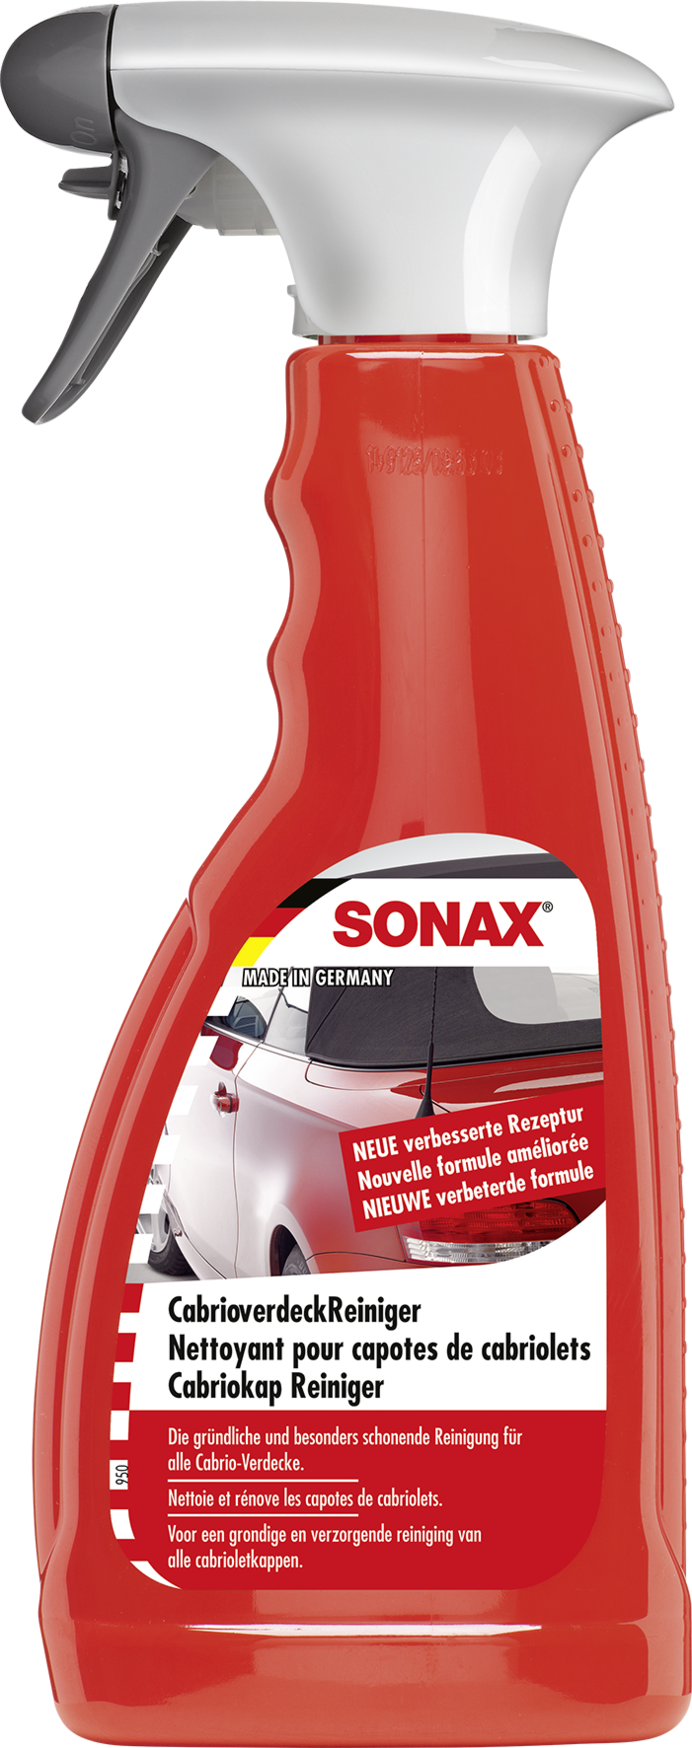 Sonax Cabrio Verdeck Reiniger 500ml - Cabrioverdeckpflege - Außen & Lack -  Pflege & Wartung 